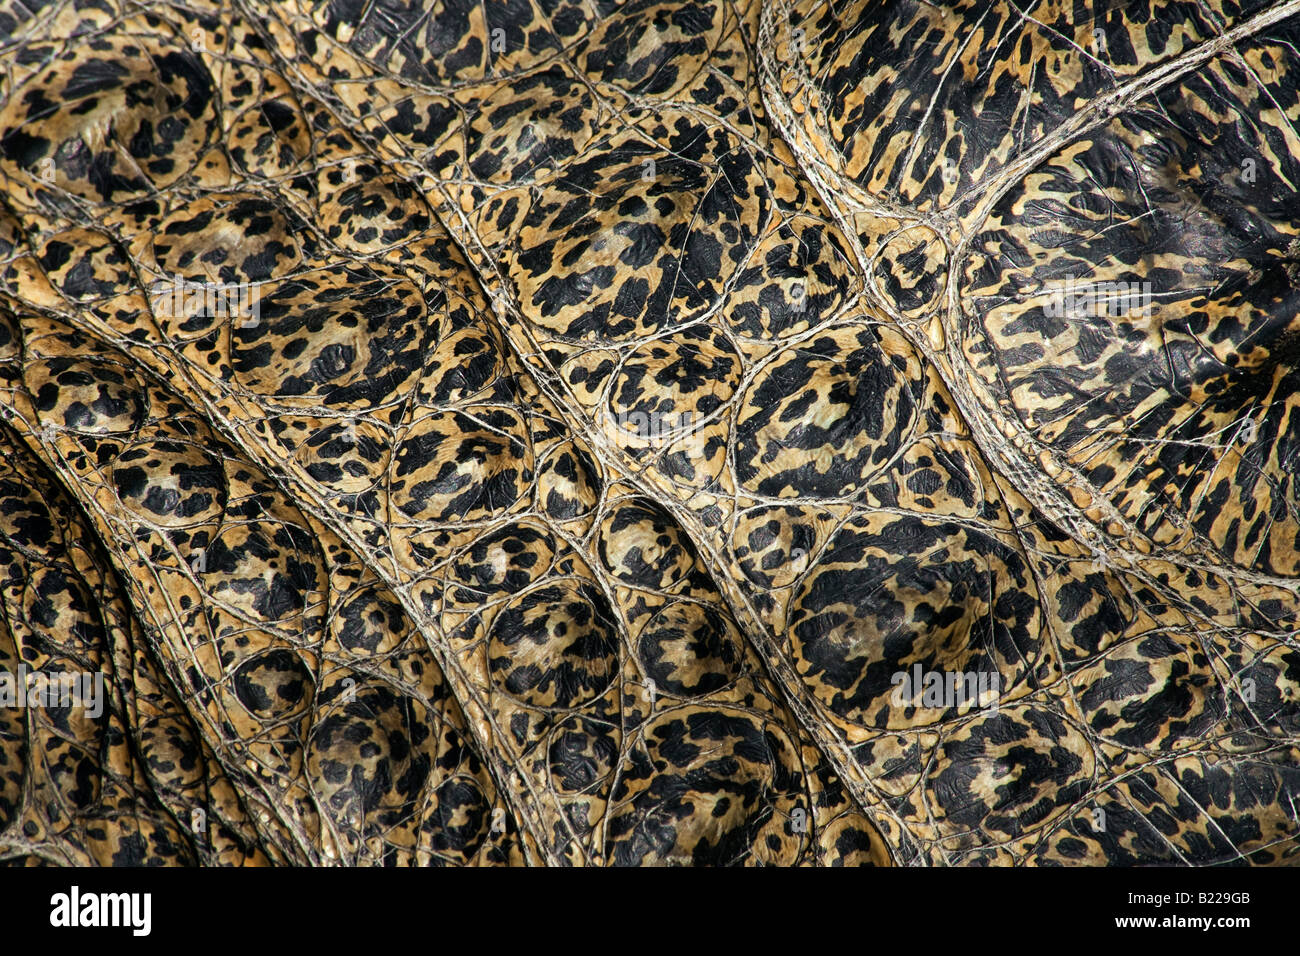 Leistenkrokodil Cocodrilo Crocodylus porosus, el detalle de la piel Rainforest Habitat Wildlife Sanctuary Foto de stock